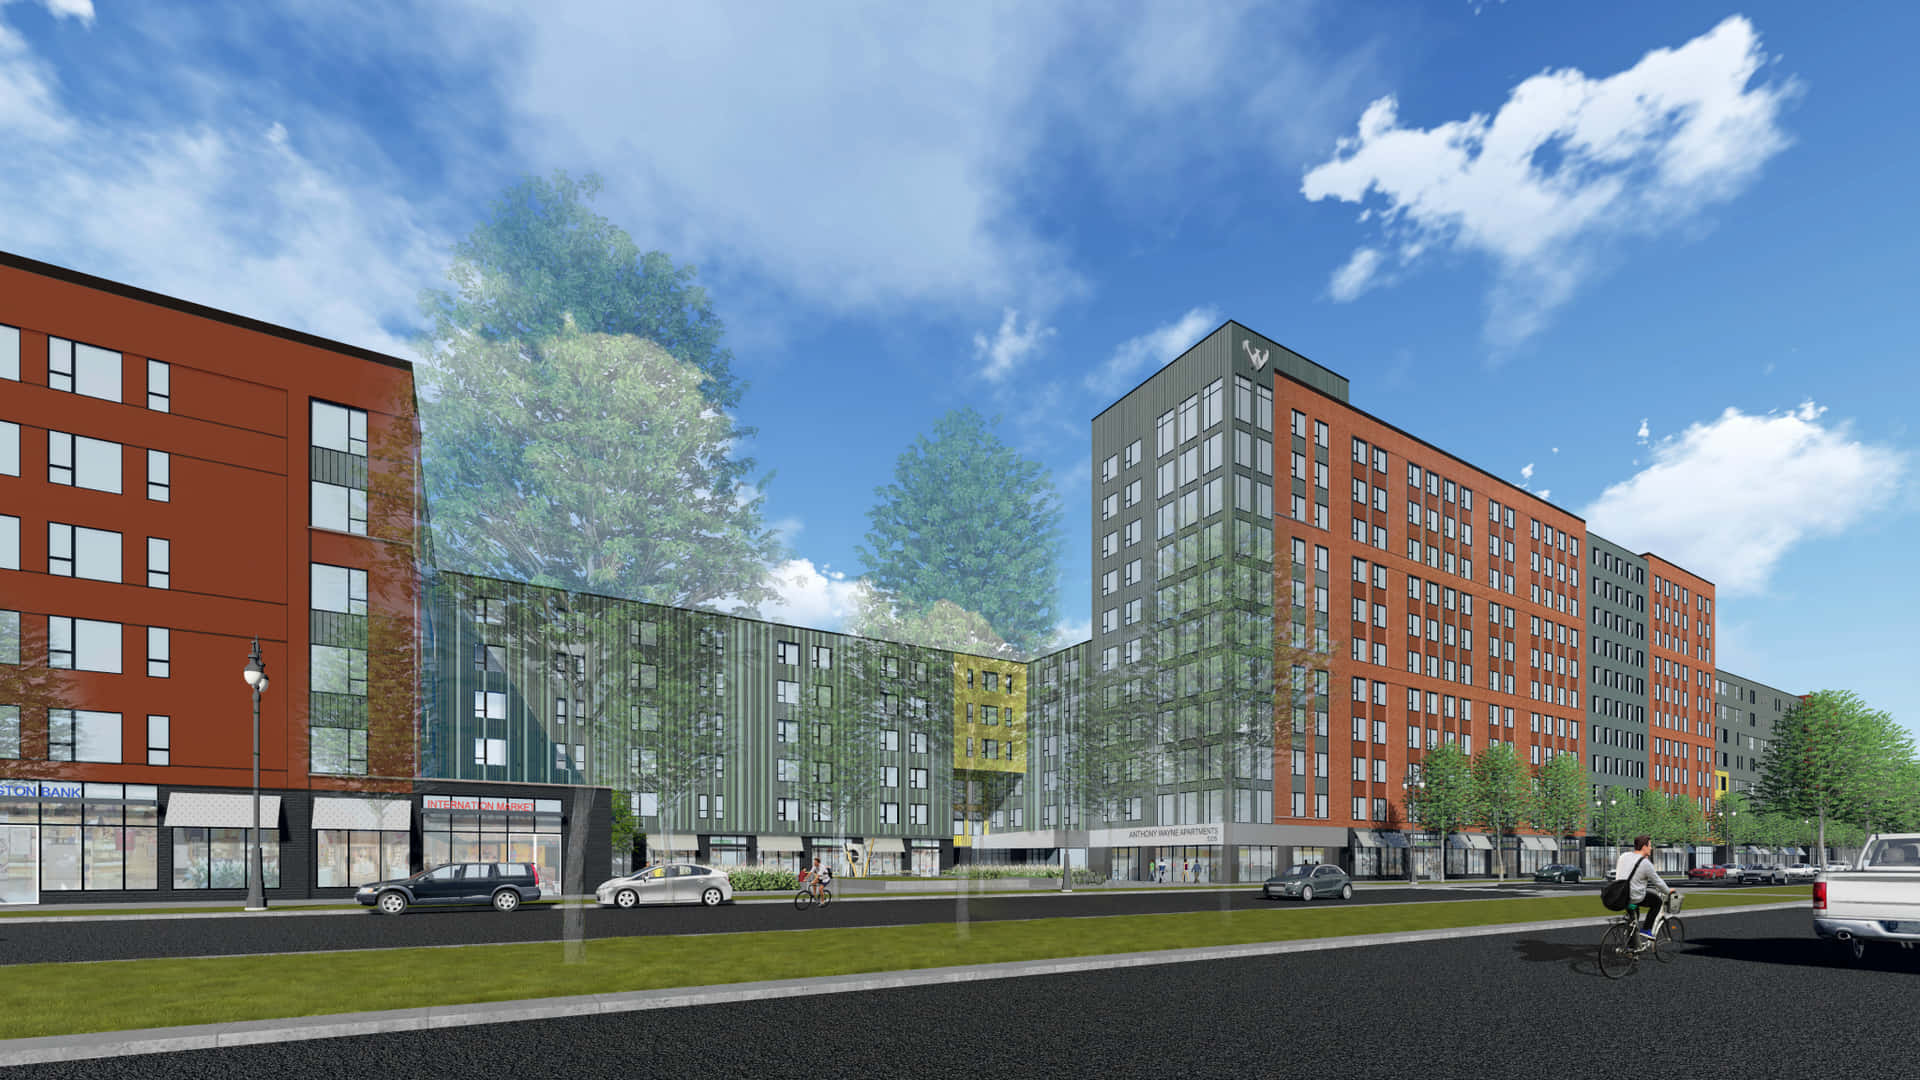 Waynestate University Housing Design Plan - width=